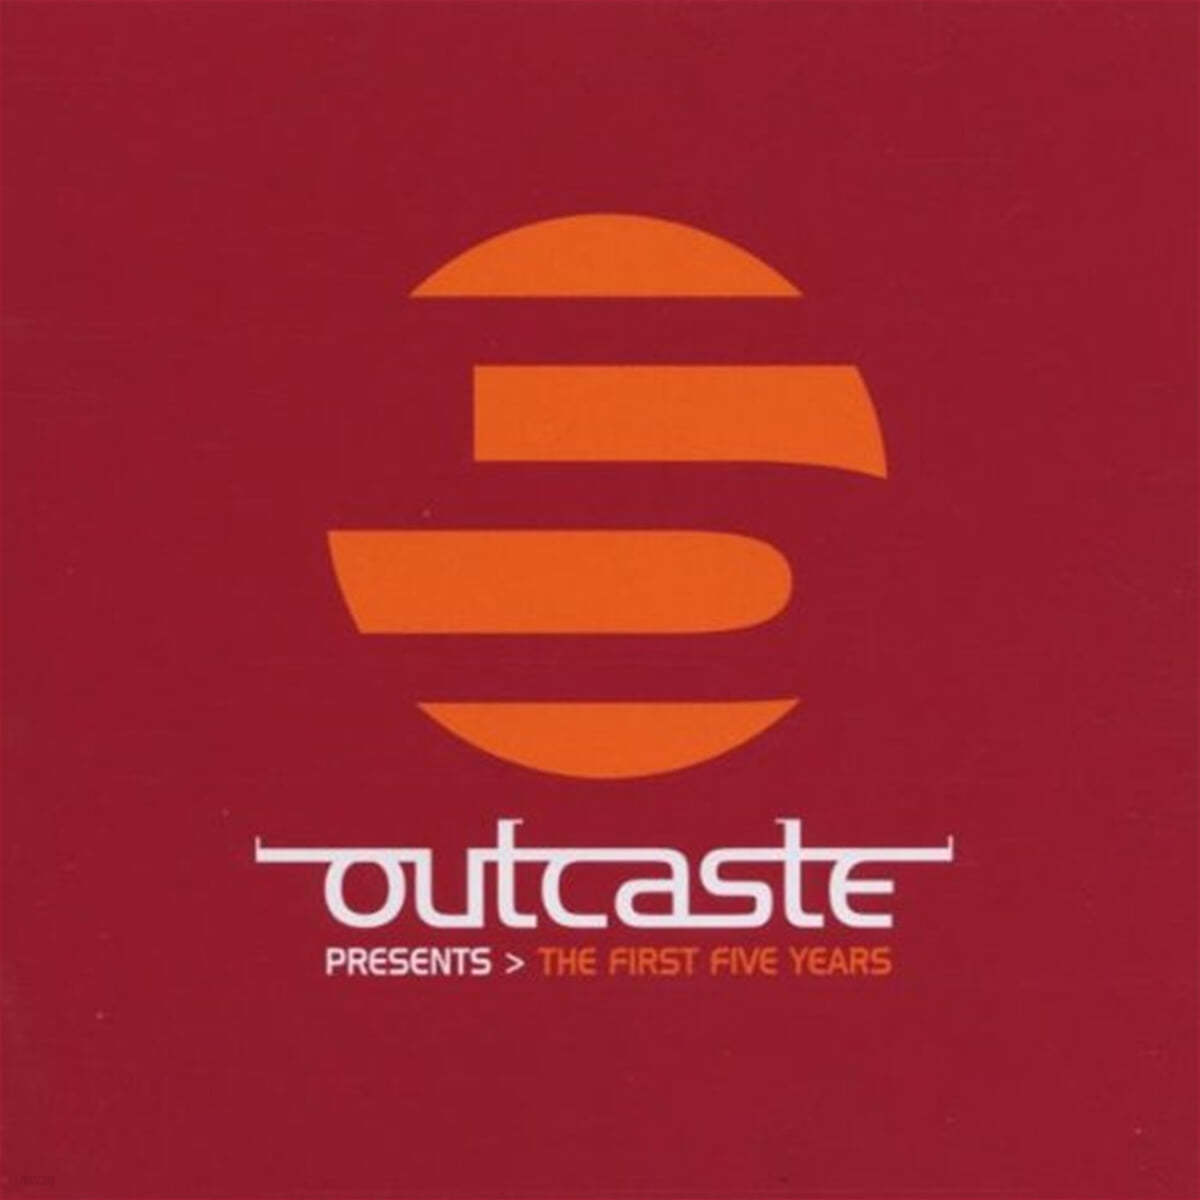 일렉트로닉 컴필레이션 - 아웃캐스트 프레젠트 (Outcaste Presents &gt; The First Five Years) 